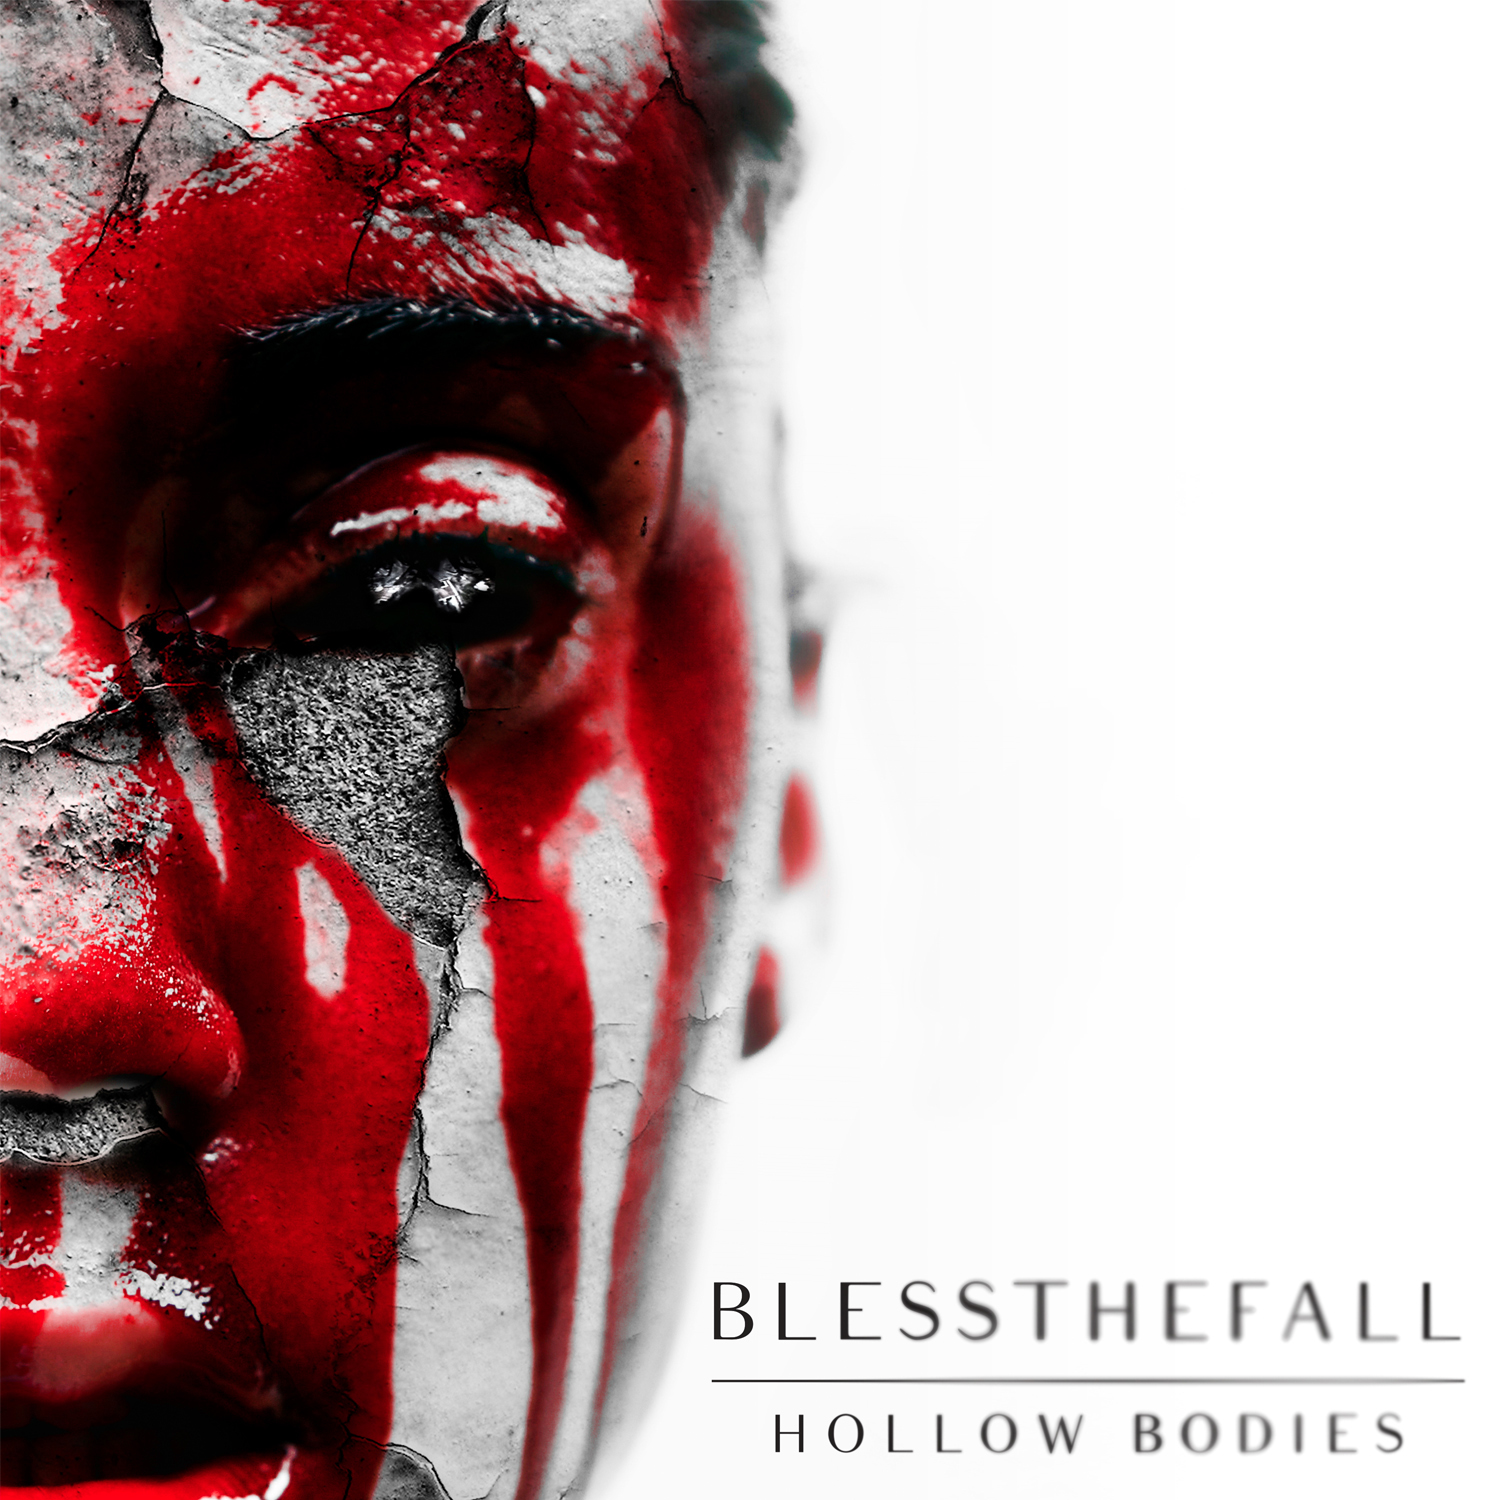 Az üresség felpörget - Blessthefall - Hollow Bodies (2013)